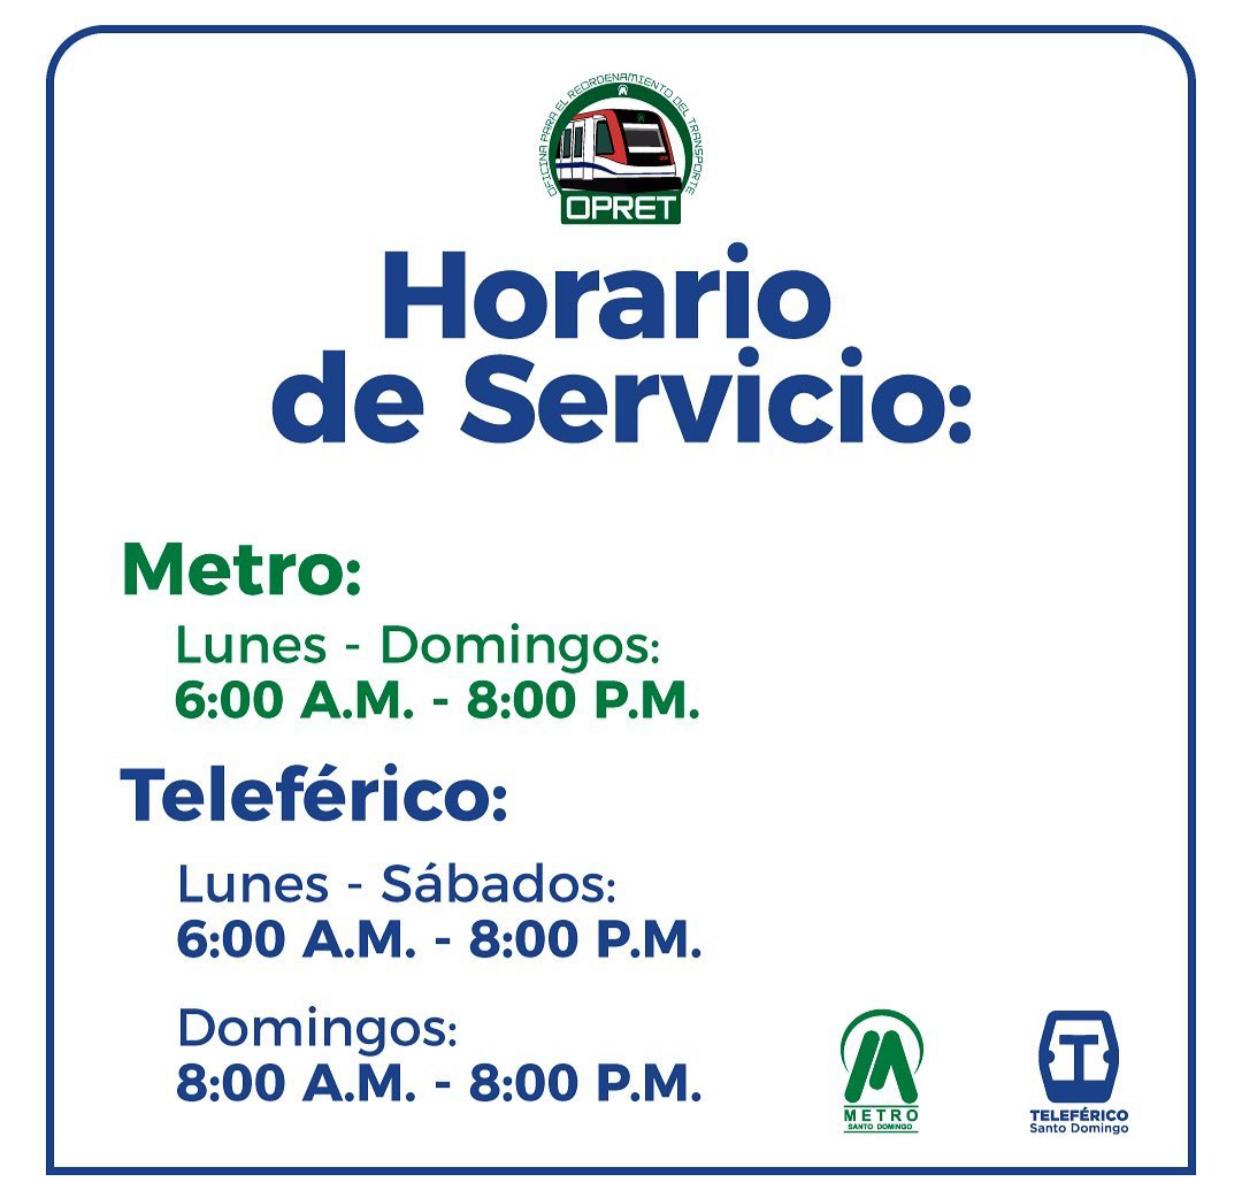 Nuevo horario de servicio del Metro y Teleférico